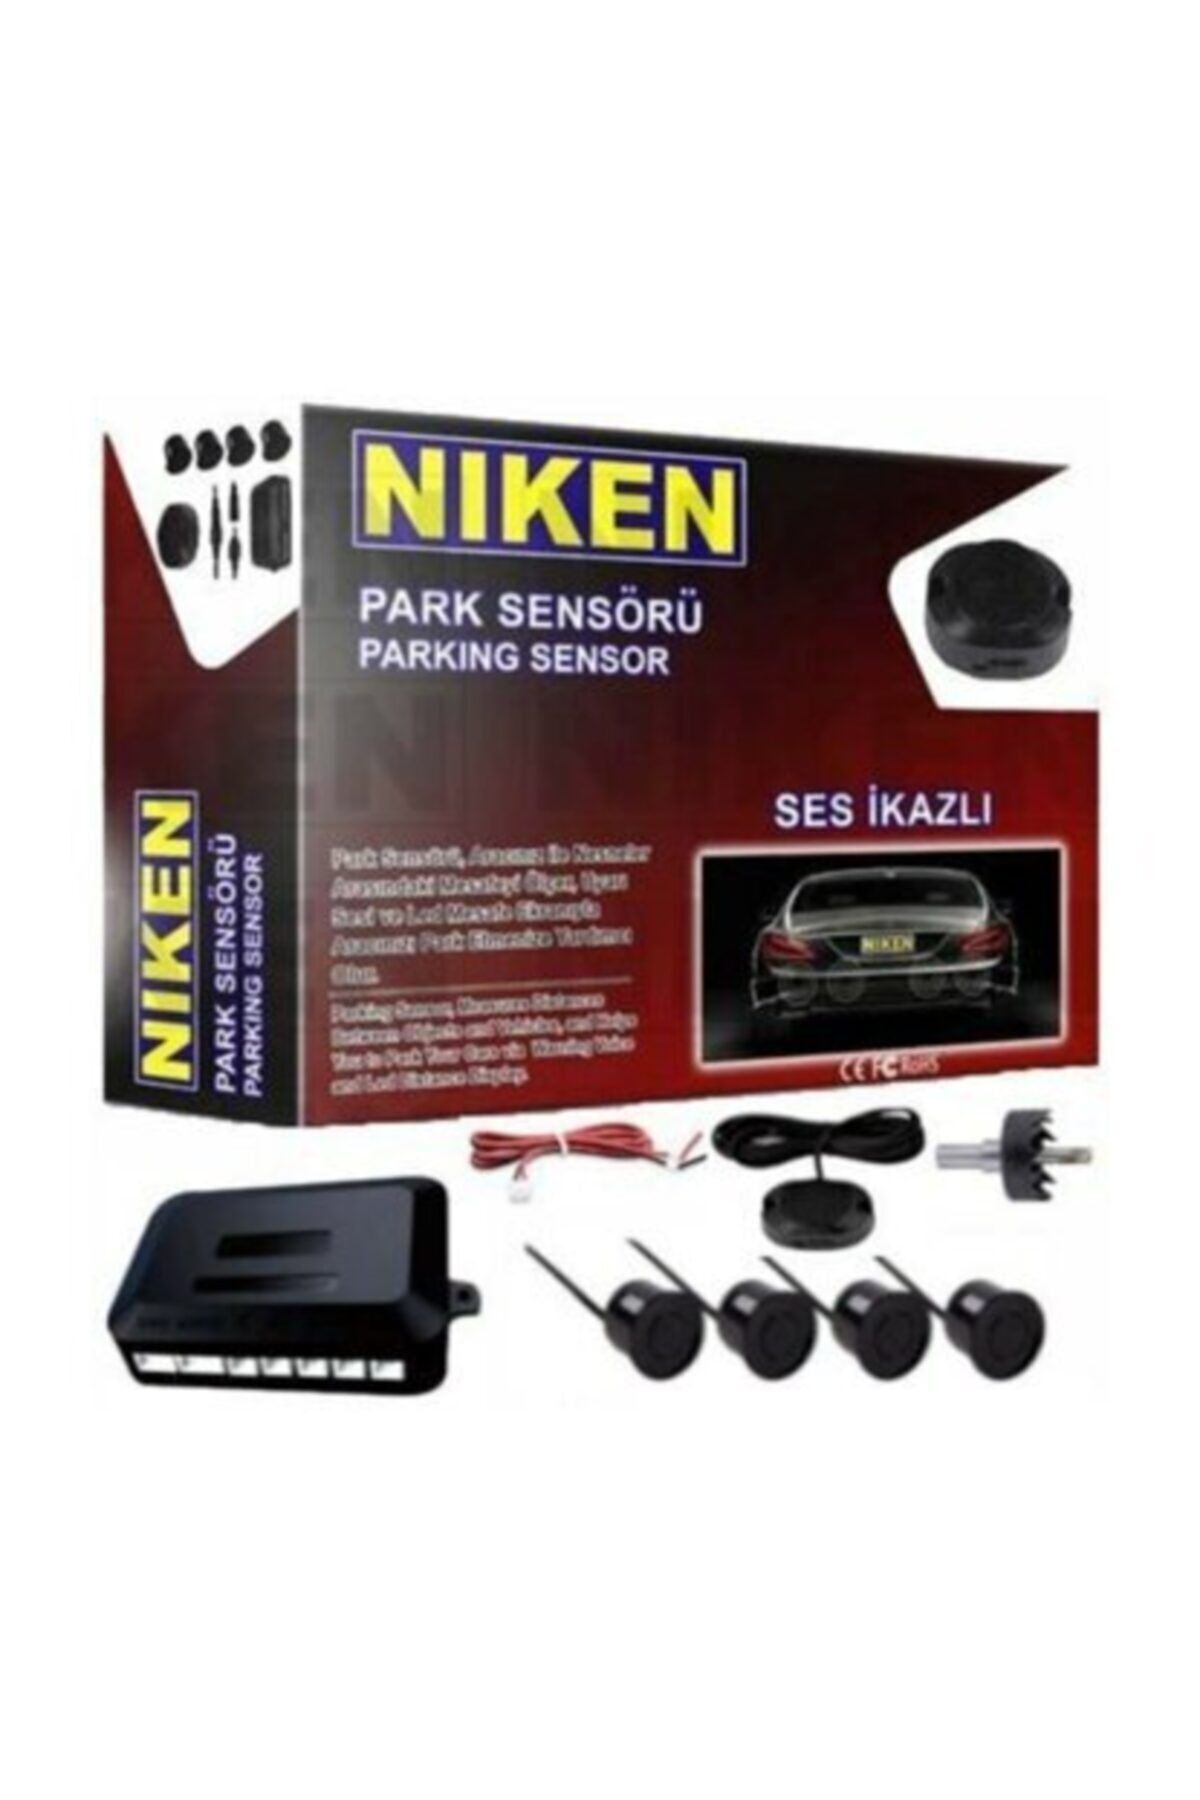 Niken Park Sensörü Ses Ikazlı 22mm Siyah Sensör